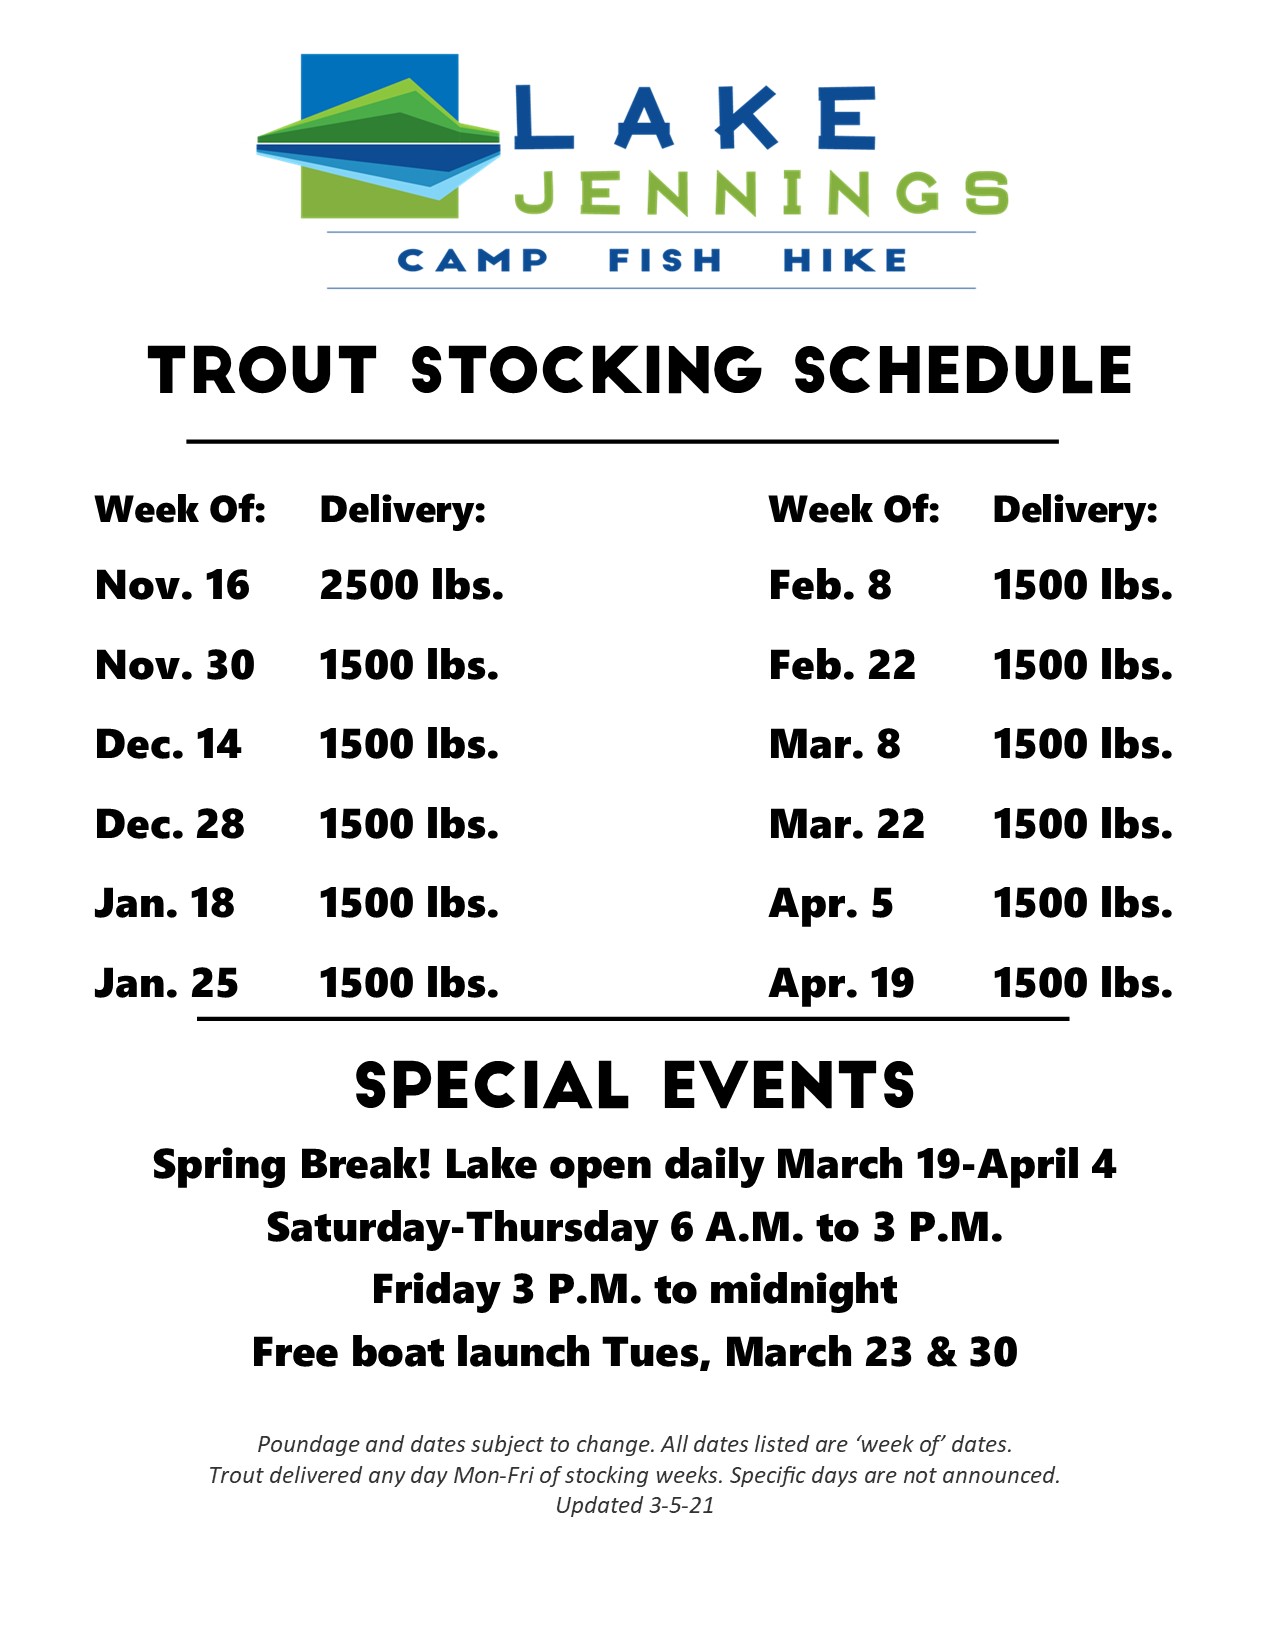 Week of Trout Stocking » Lake Jennings